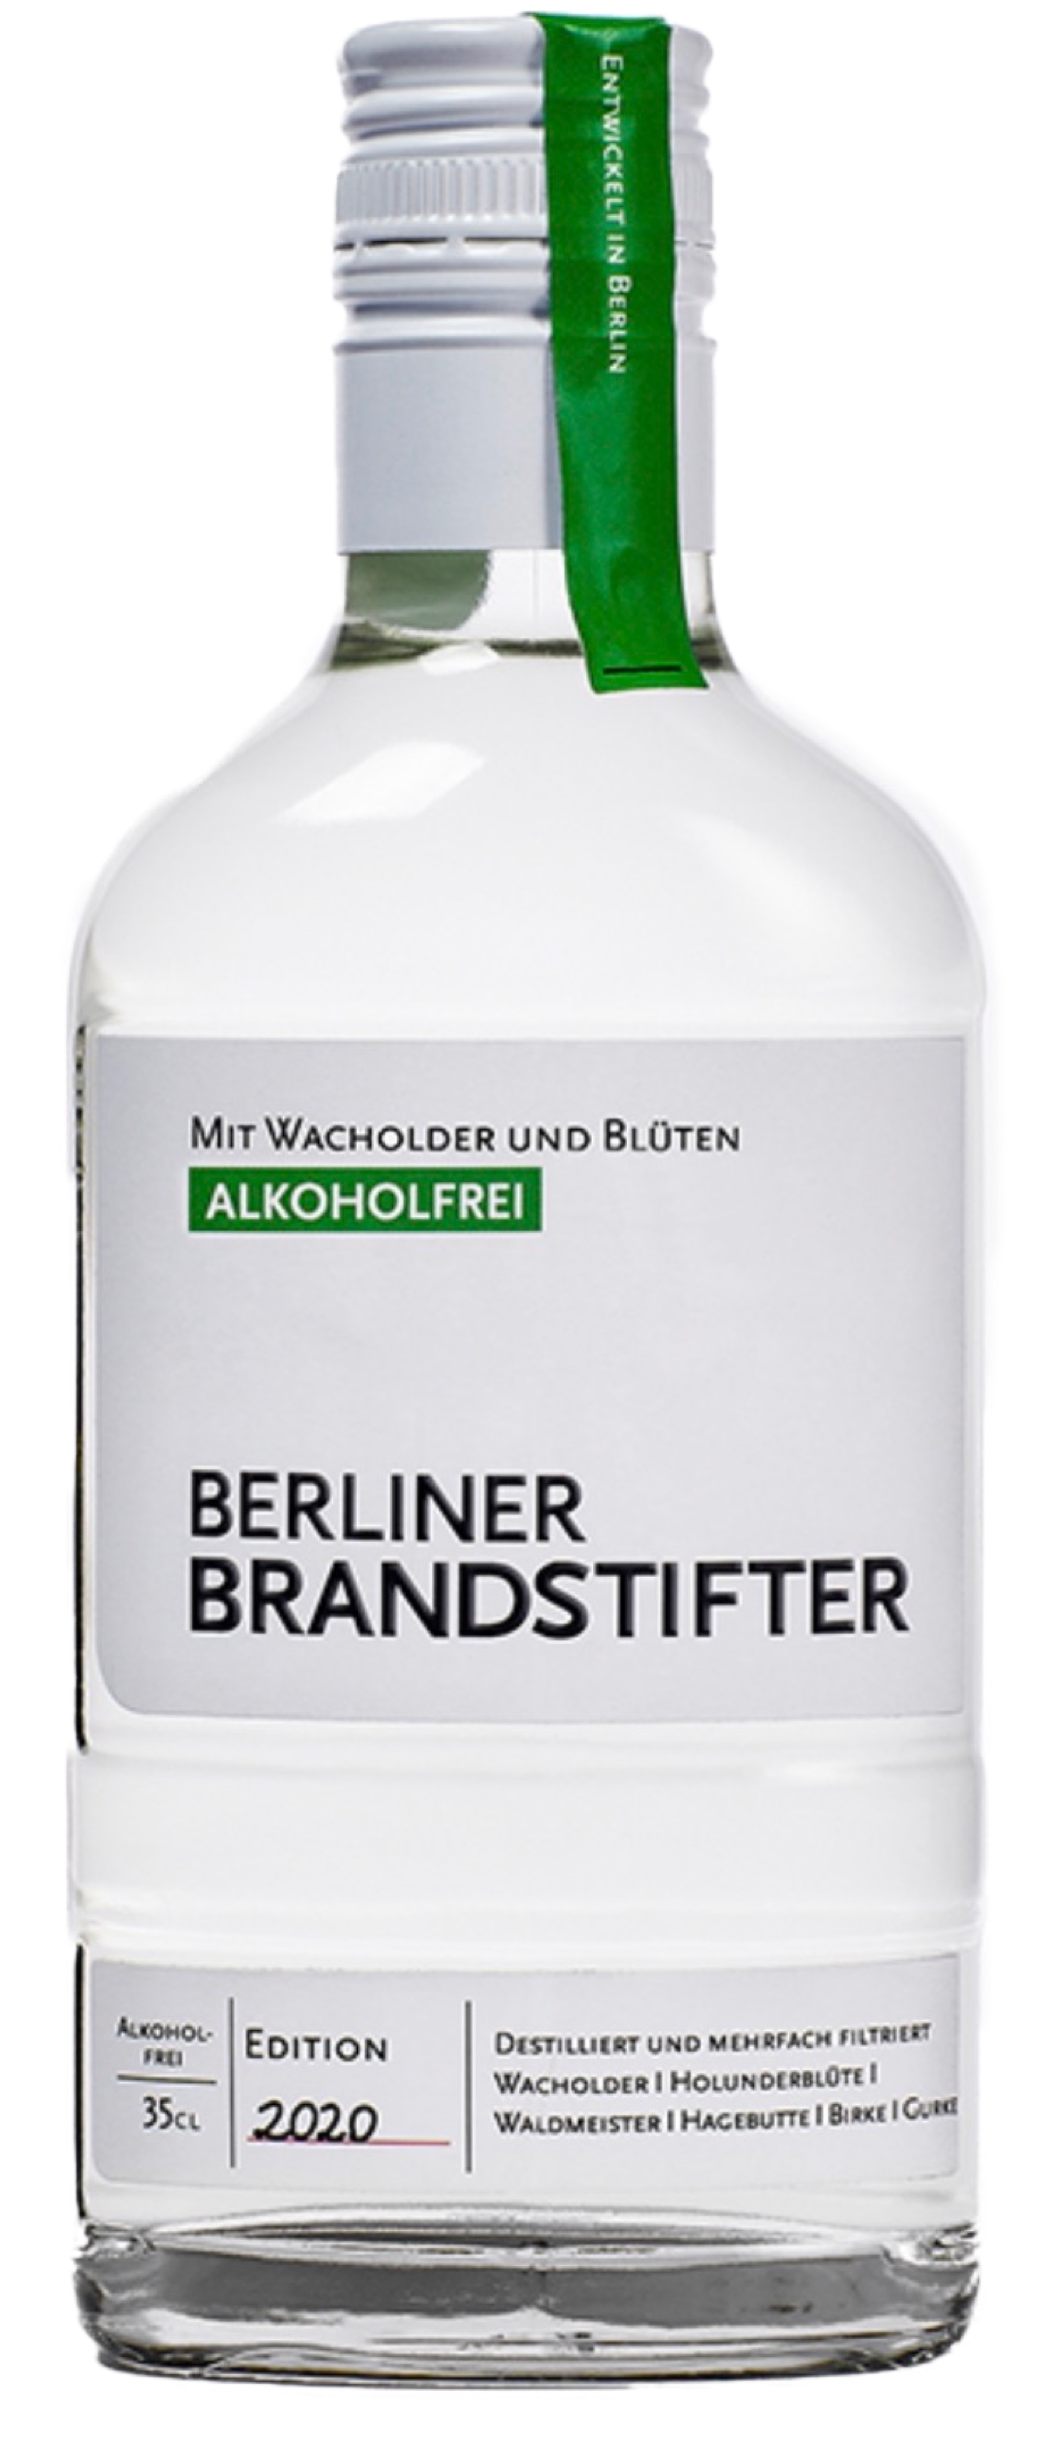 Berliner Brandstifter Alkoholfrei Wacholder und Blüten 0,35L